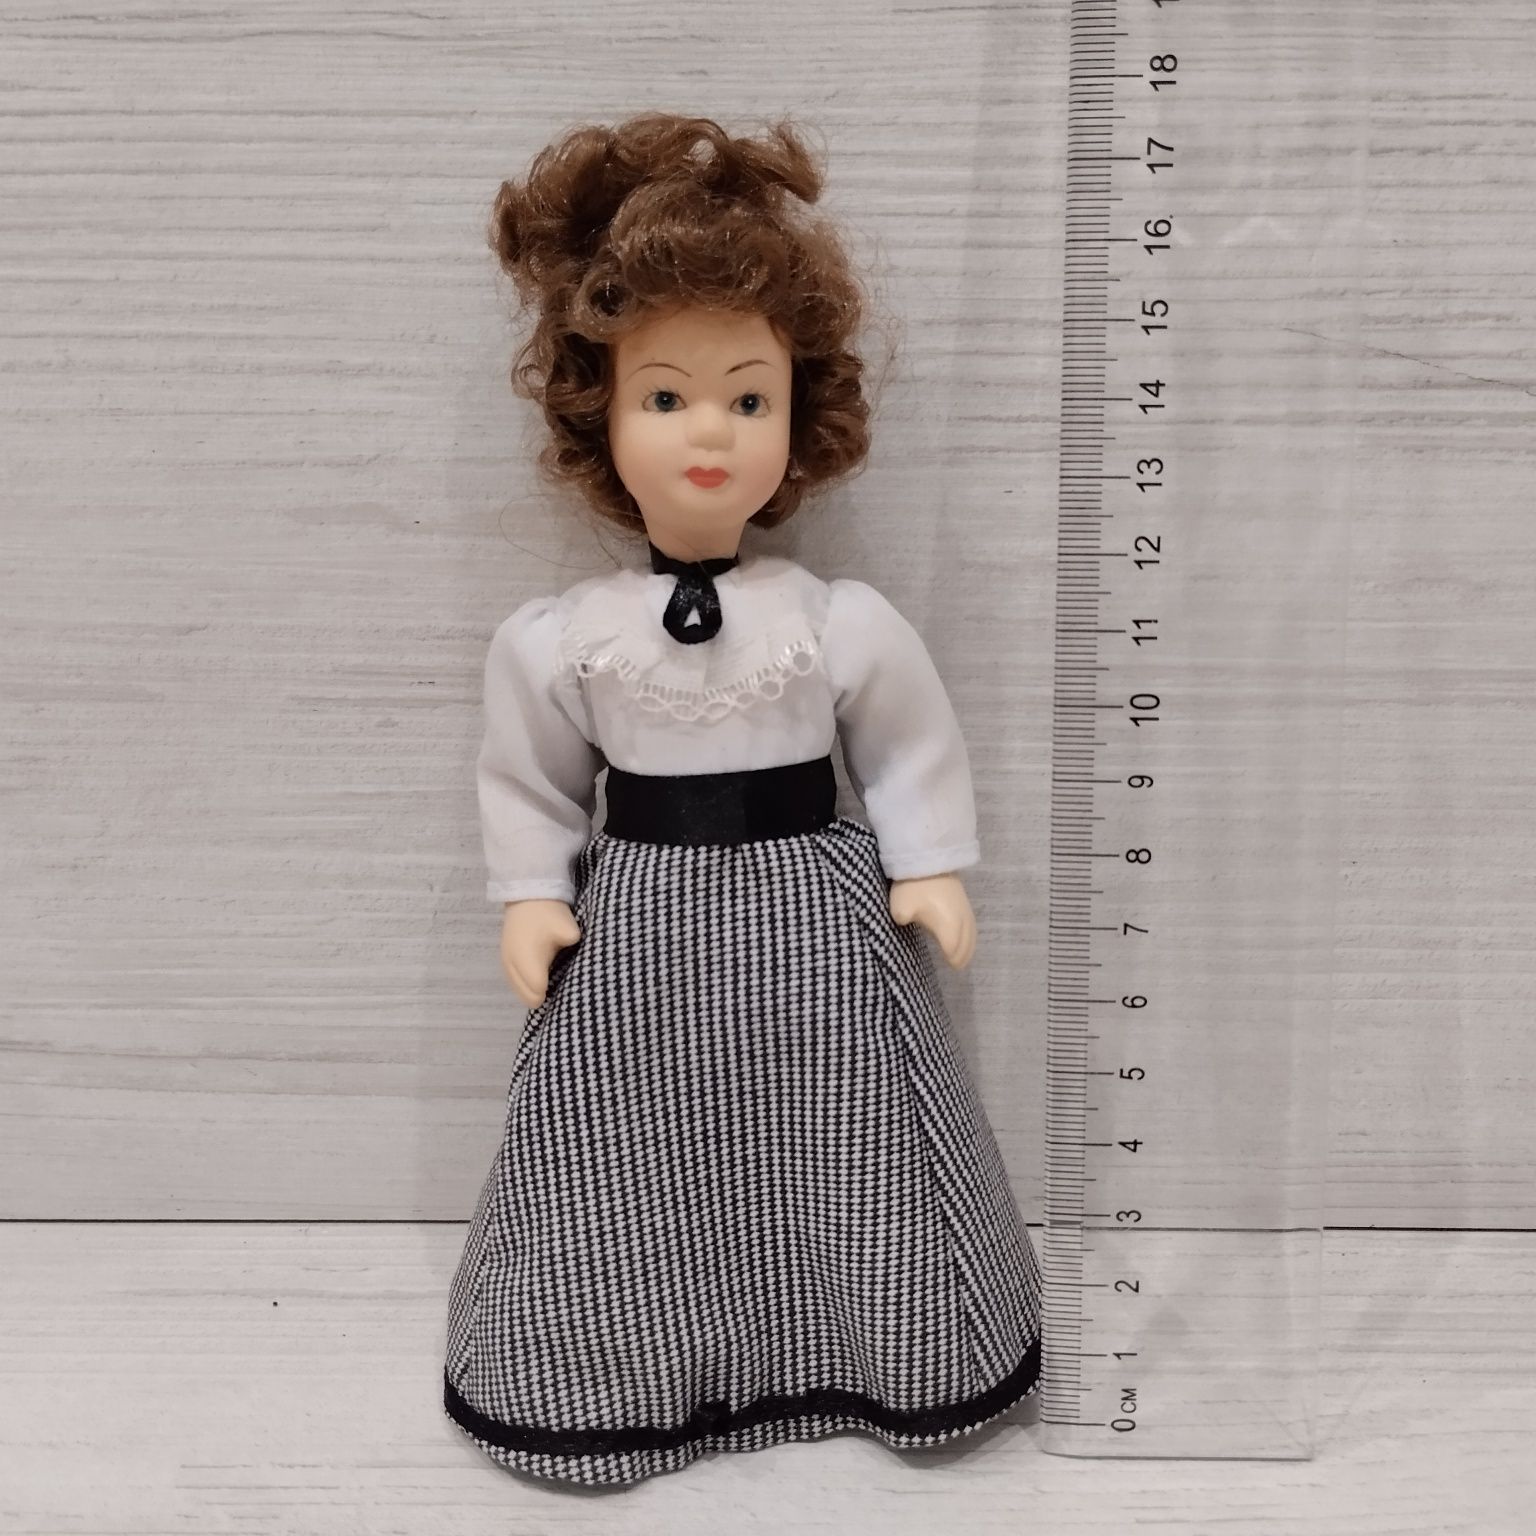 Sprzedam nową lalkę porcelanowa